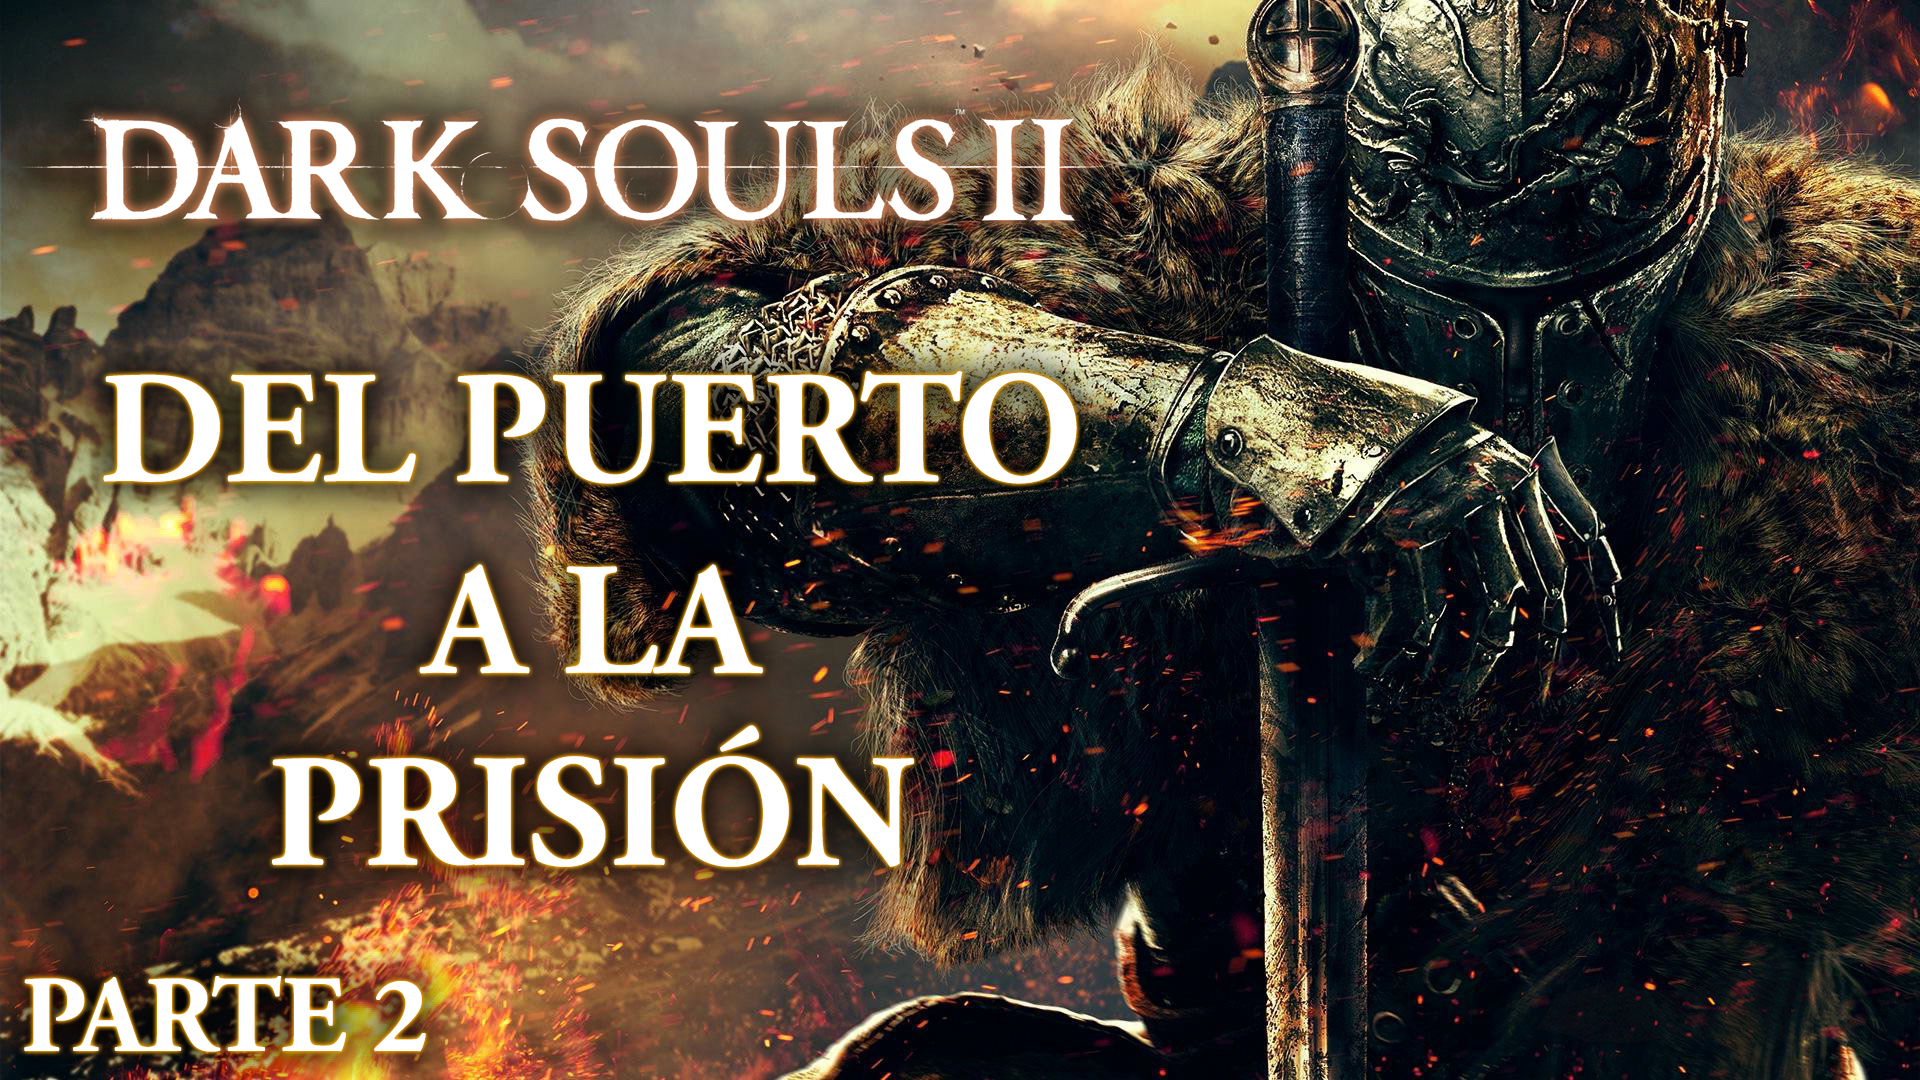 Serie Dark Souls II Parte 2: Del puerto a la prisión